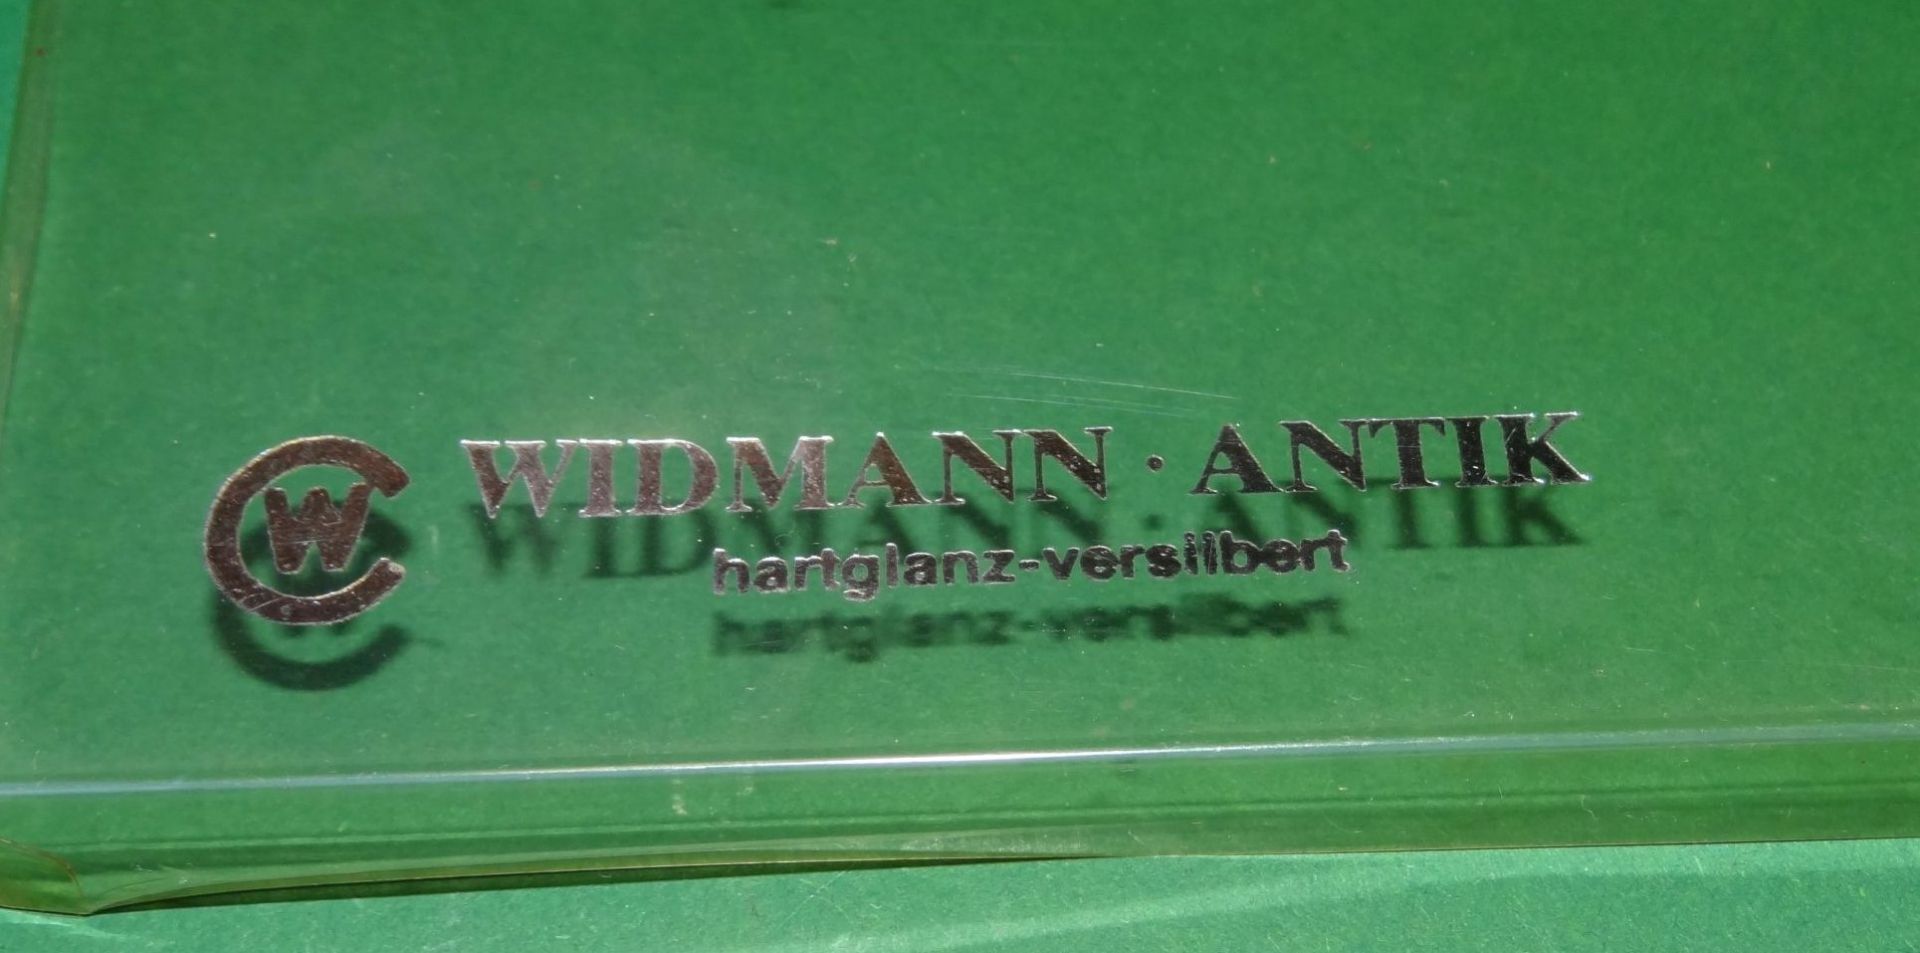 12x Moccalöffel "Widmann-Antik" versilbert, hartvergoldet, in Schachteln, L-9,5 c - Bild 4 aus 4